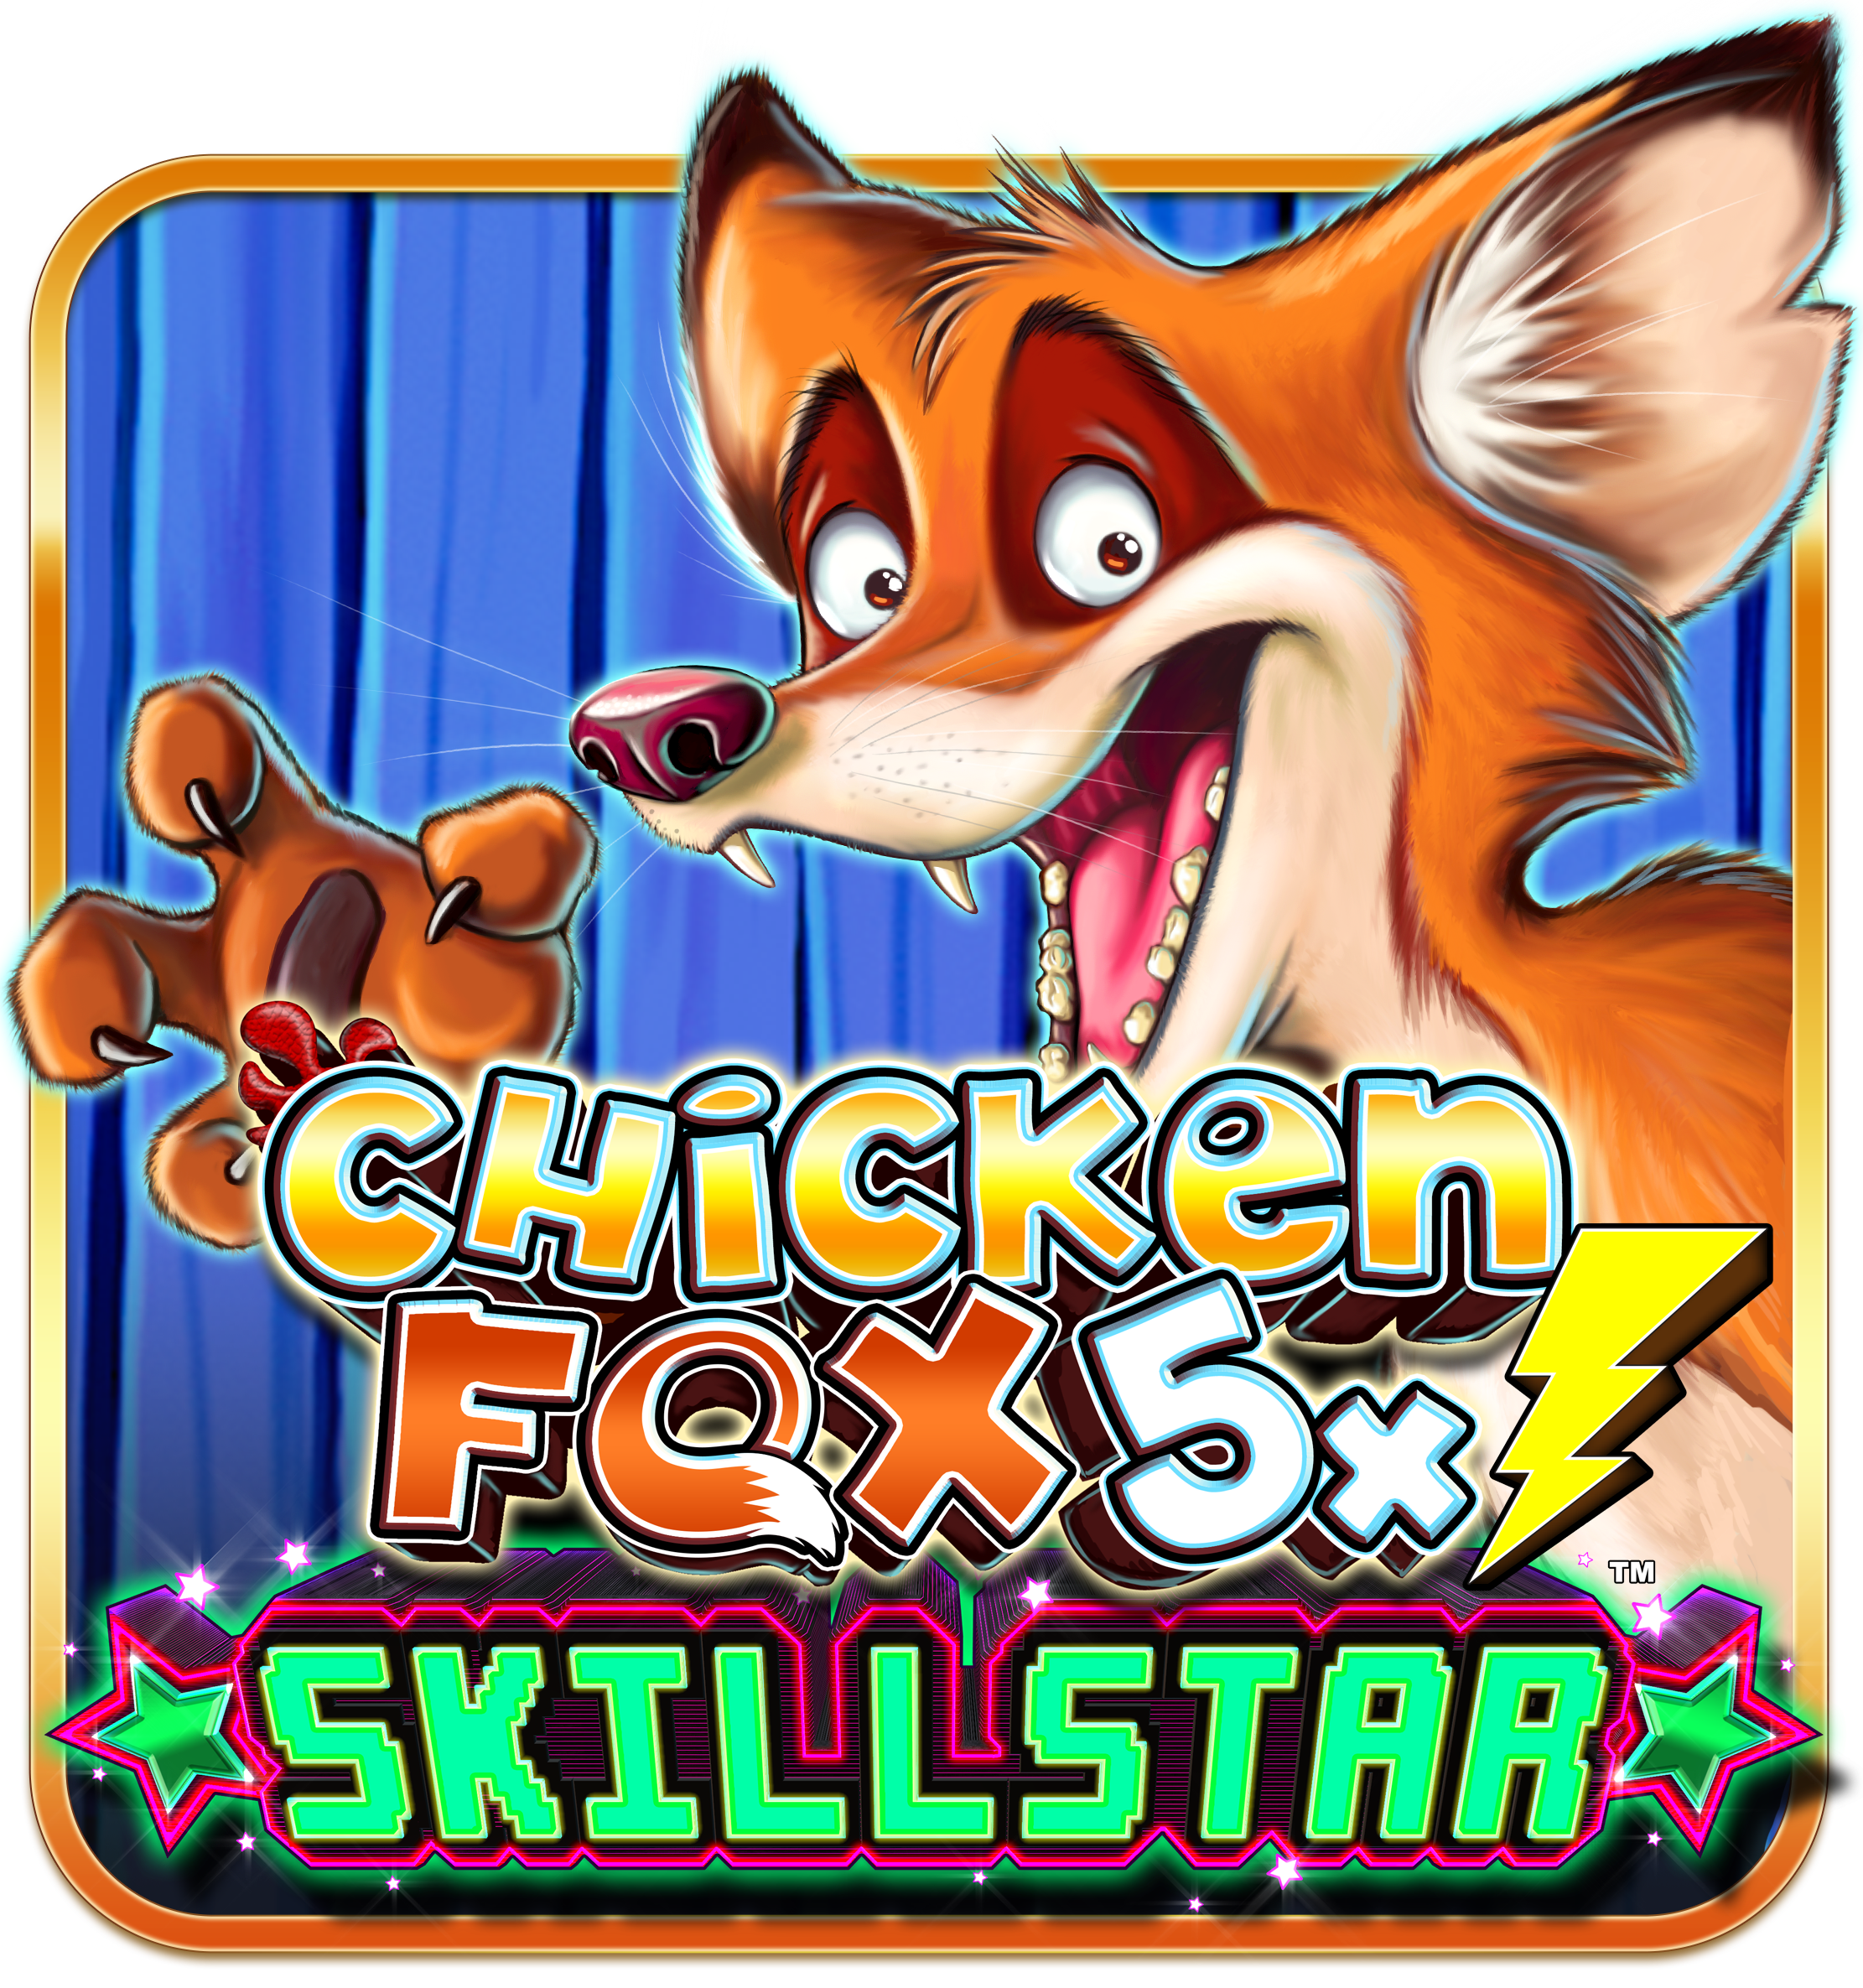 ChickenFox5xSkillstar Lobby Square